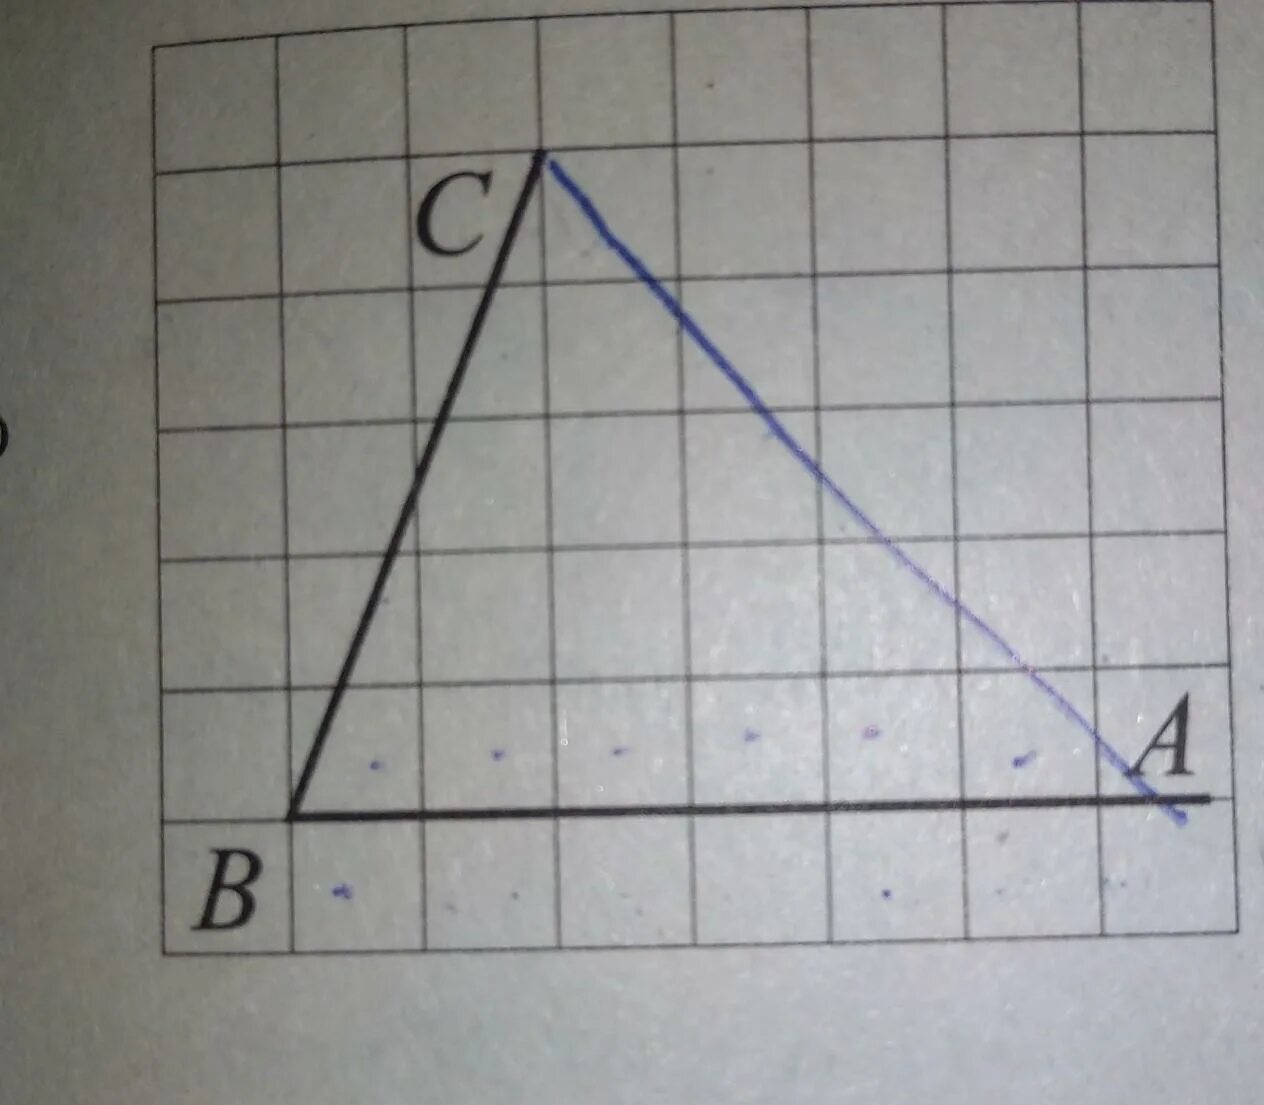 Найдите тангенс угла c треугольника abc изображенного. Найдите тангенс угла АБС изображенном на рисунке. Найдите тангенс угла ABC изображённого на рисунке. Найдите тангенс угла АБС изображенном на рисунке 5. Найдите тангенс угла а треугольника ABC, изображённого на рисунке..